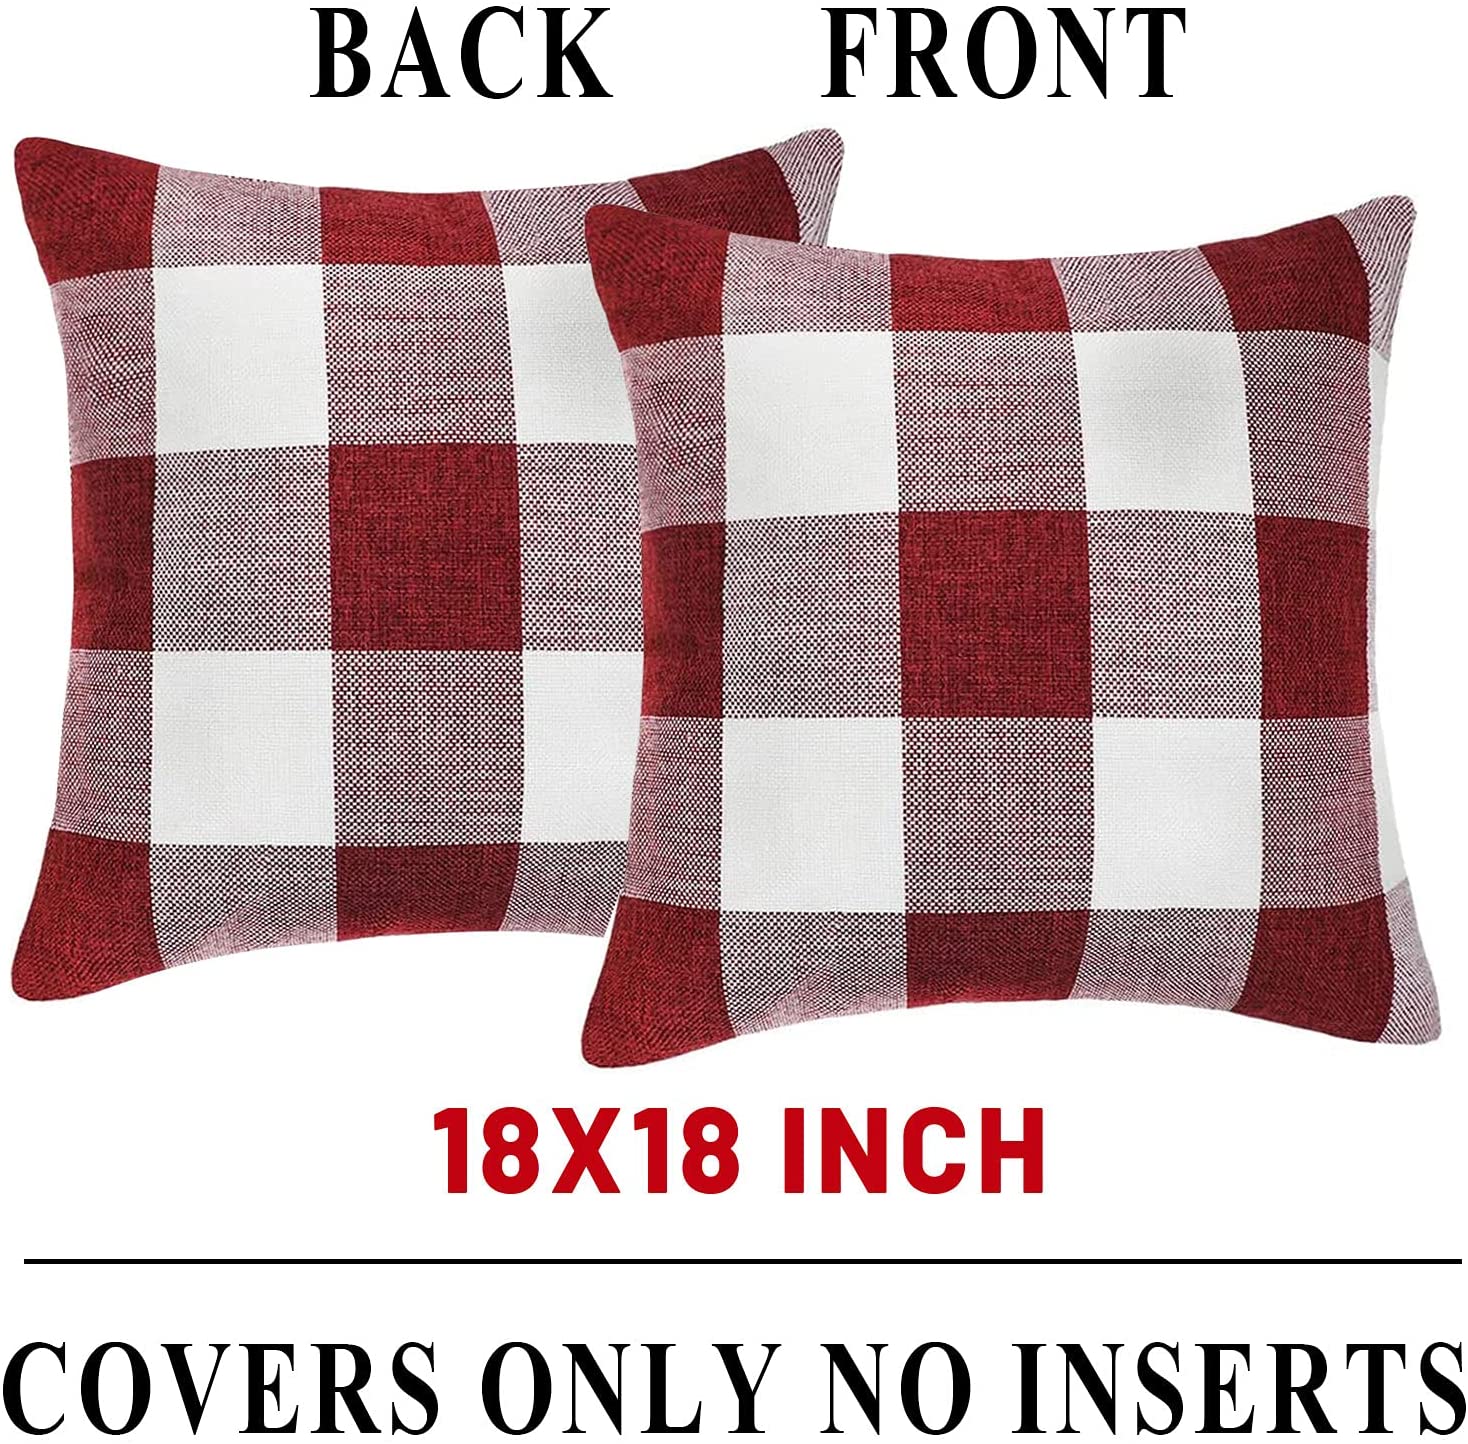 Set of 2 Farmhouse Buffalo Check Plaid Throw Pillow Covers 18 x 18 with 2 Bonus Coasters (Burgundy & White)